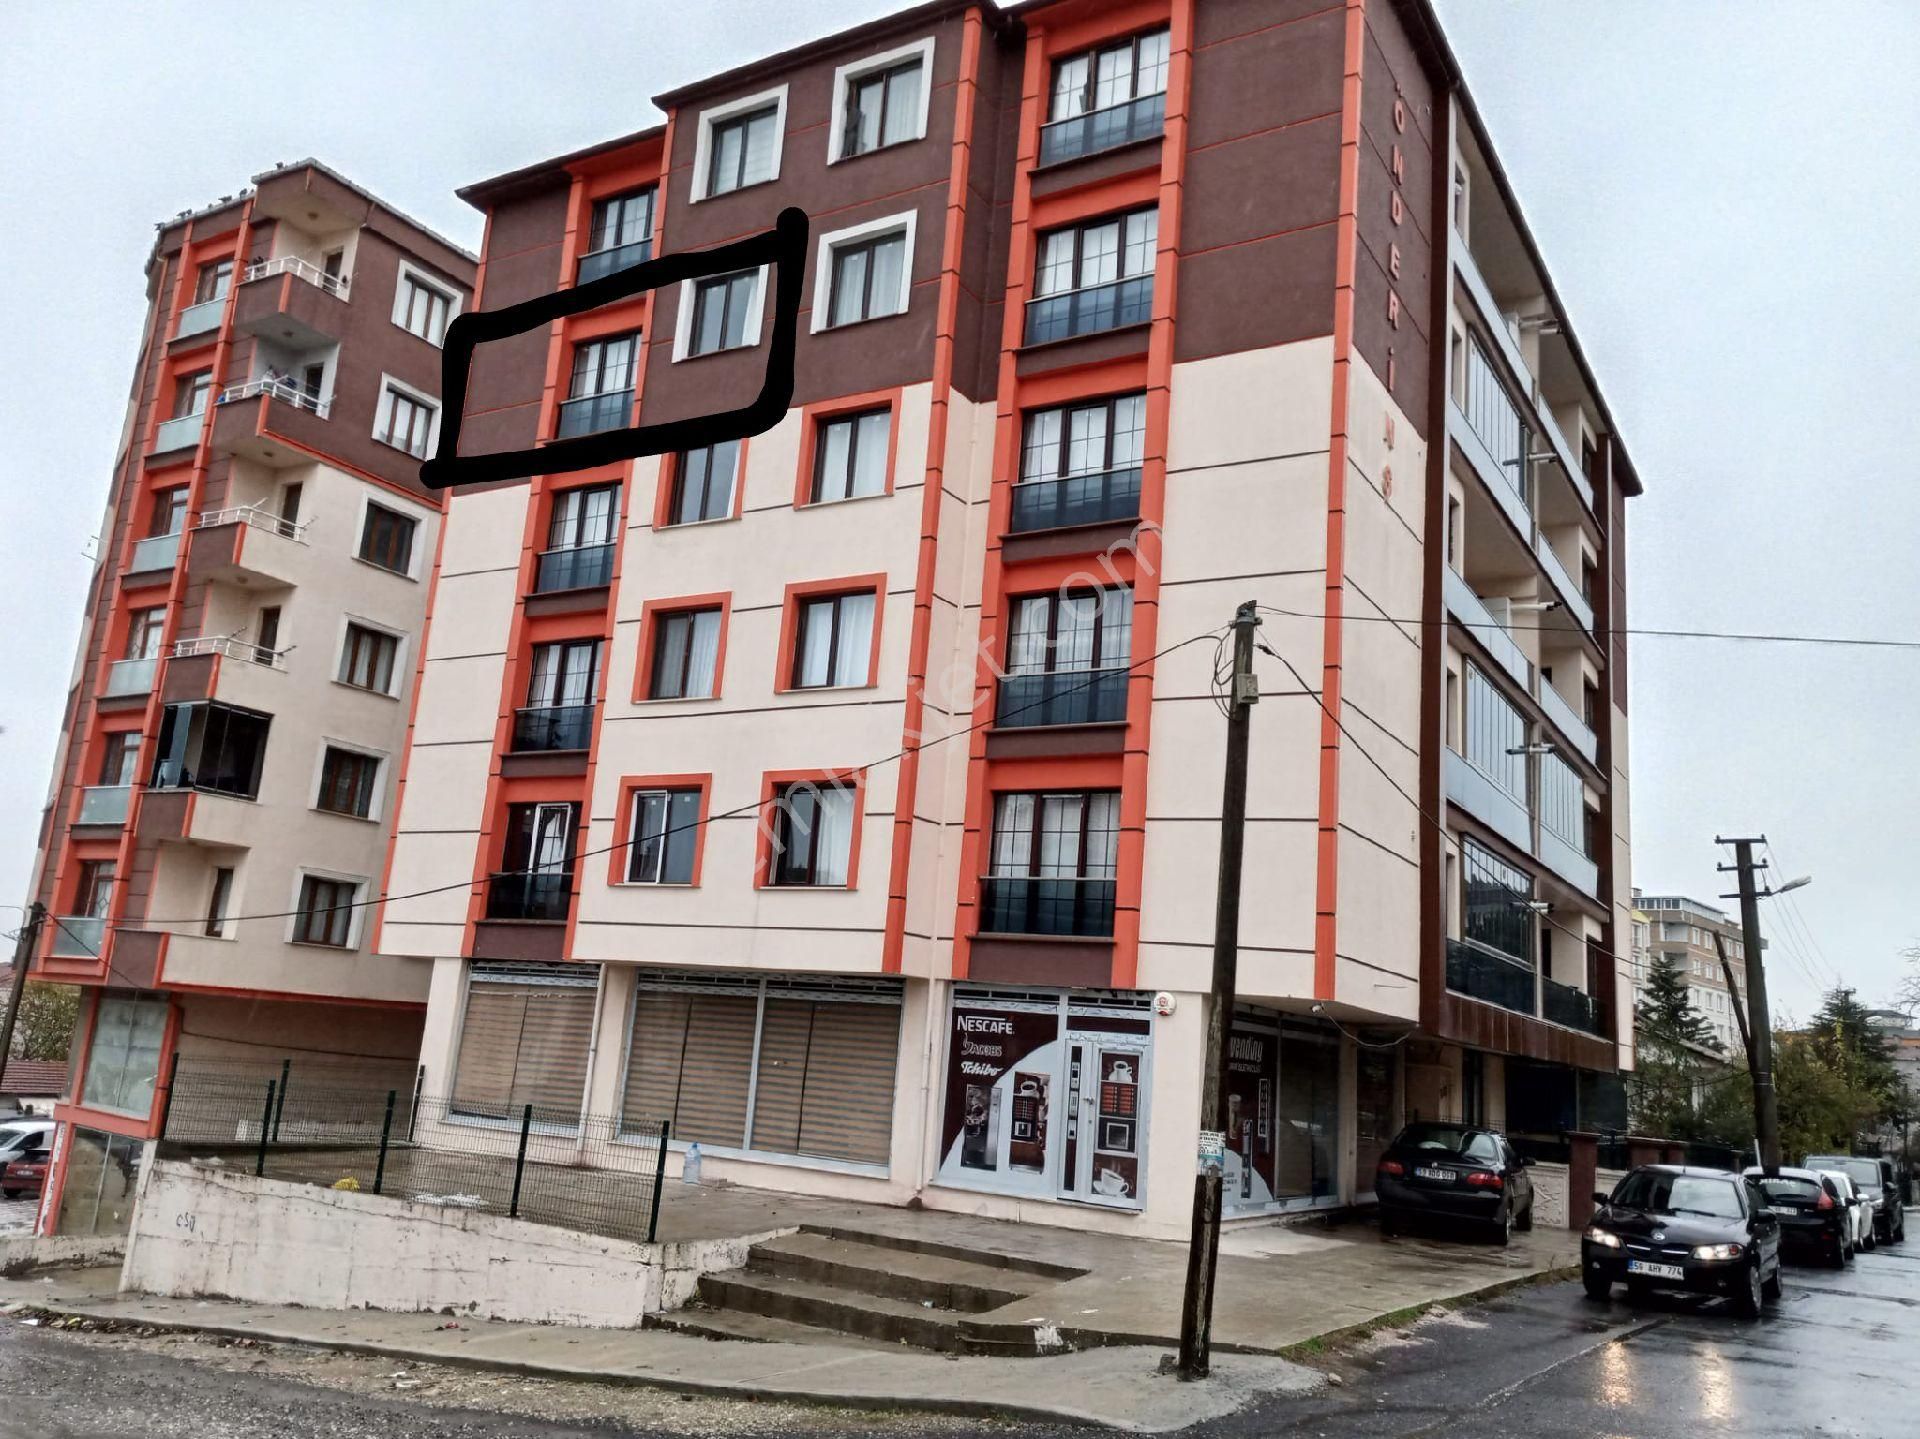 Çerkezköy Kızılpınar Atatürk Satılık Daire Kızılpınar Atatürk Mahallesi'nde sahibinden iskanlı ekstralı masrafsız 2+1 dairem satılıktır 